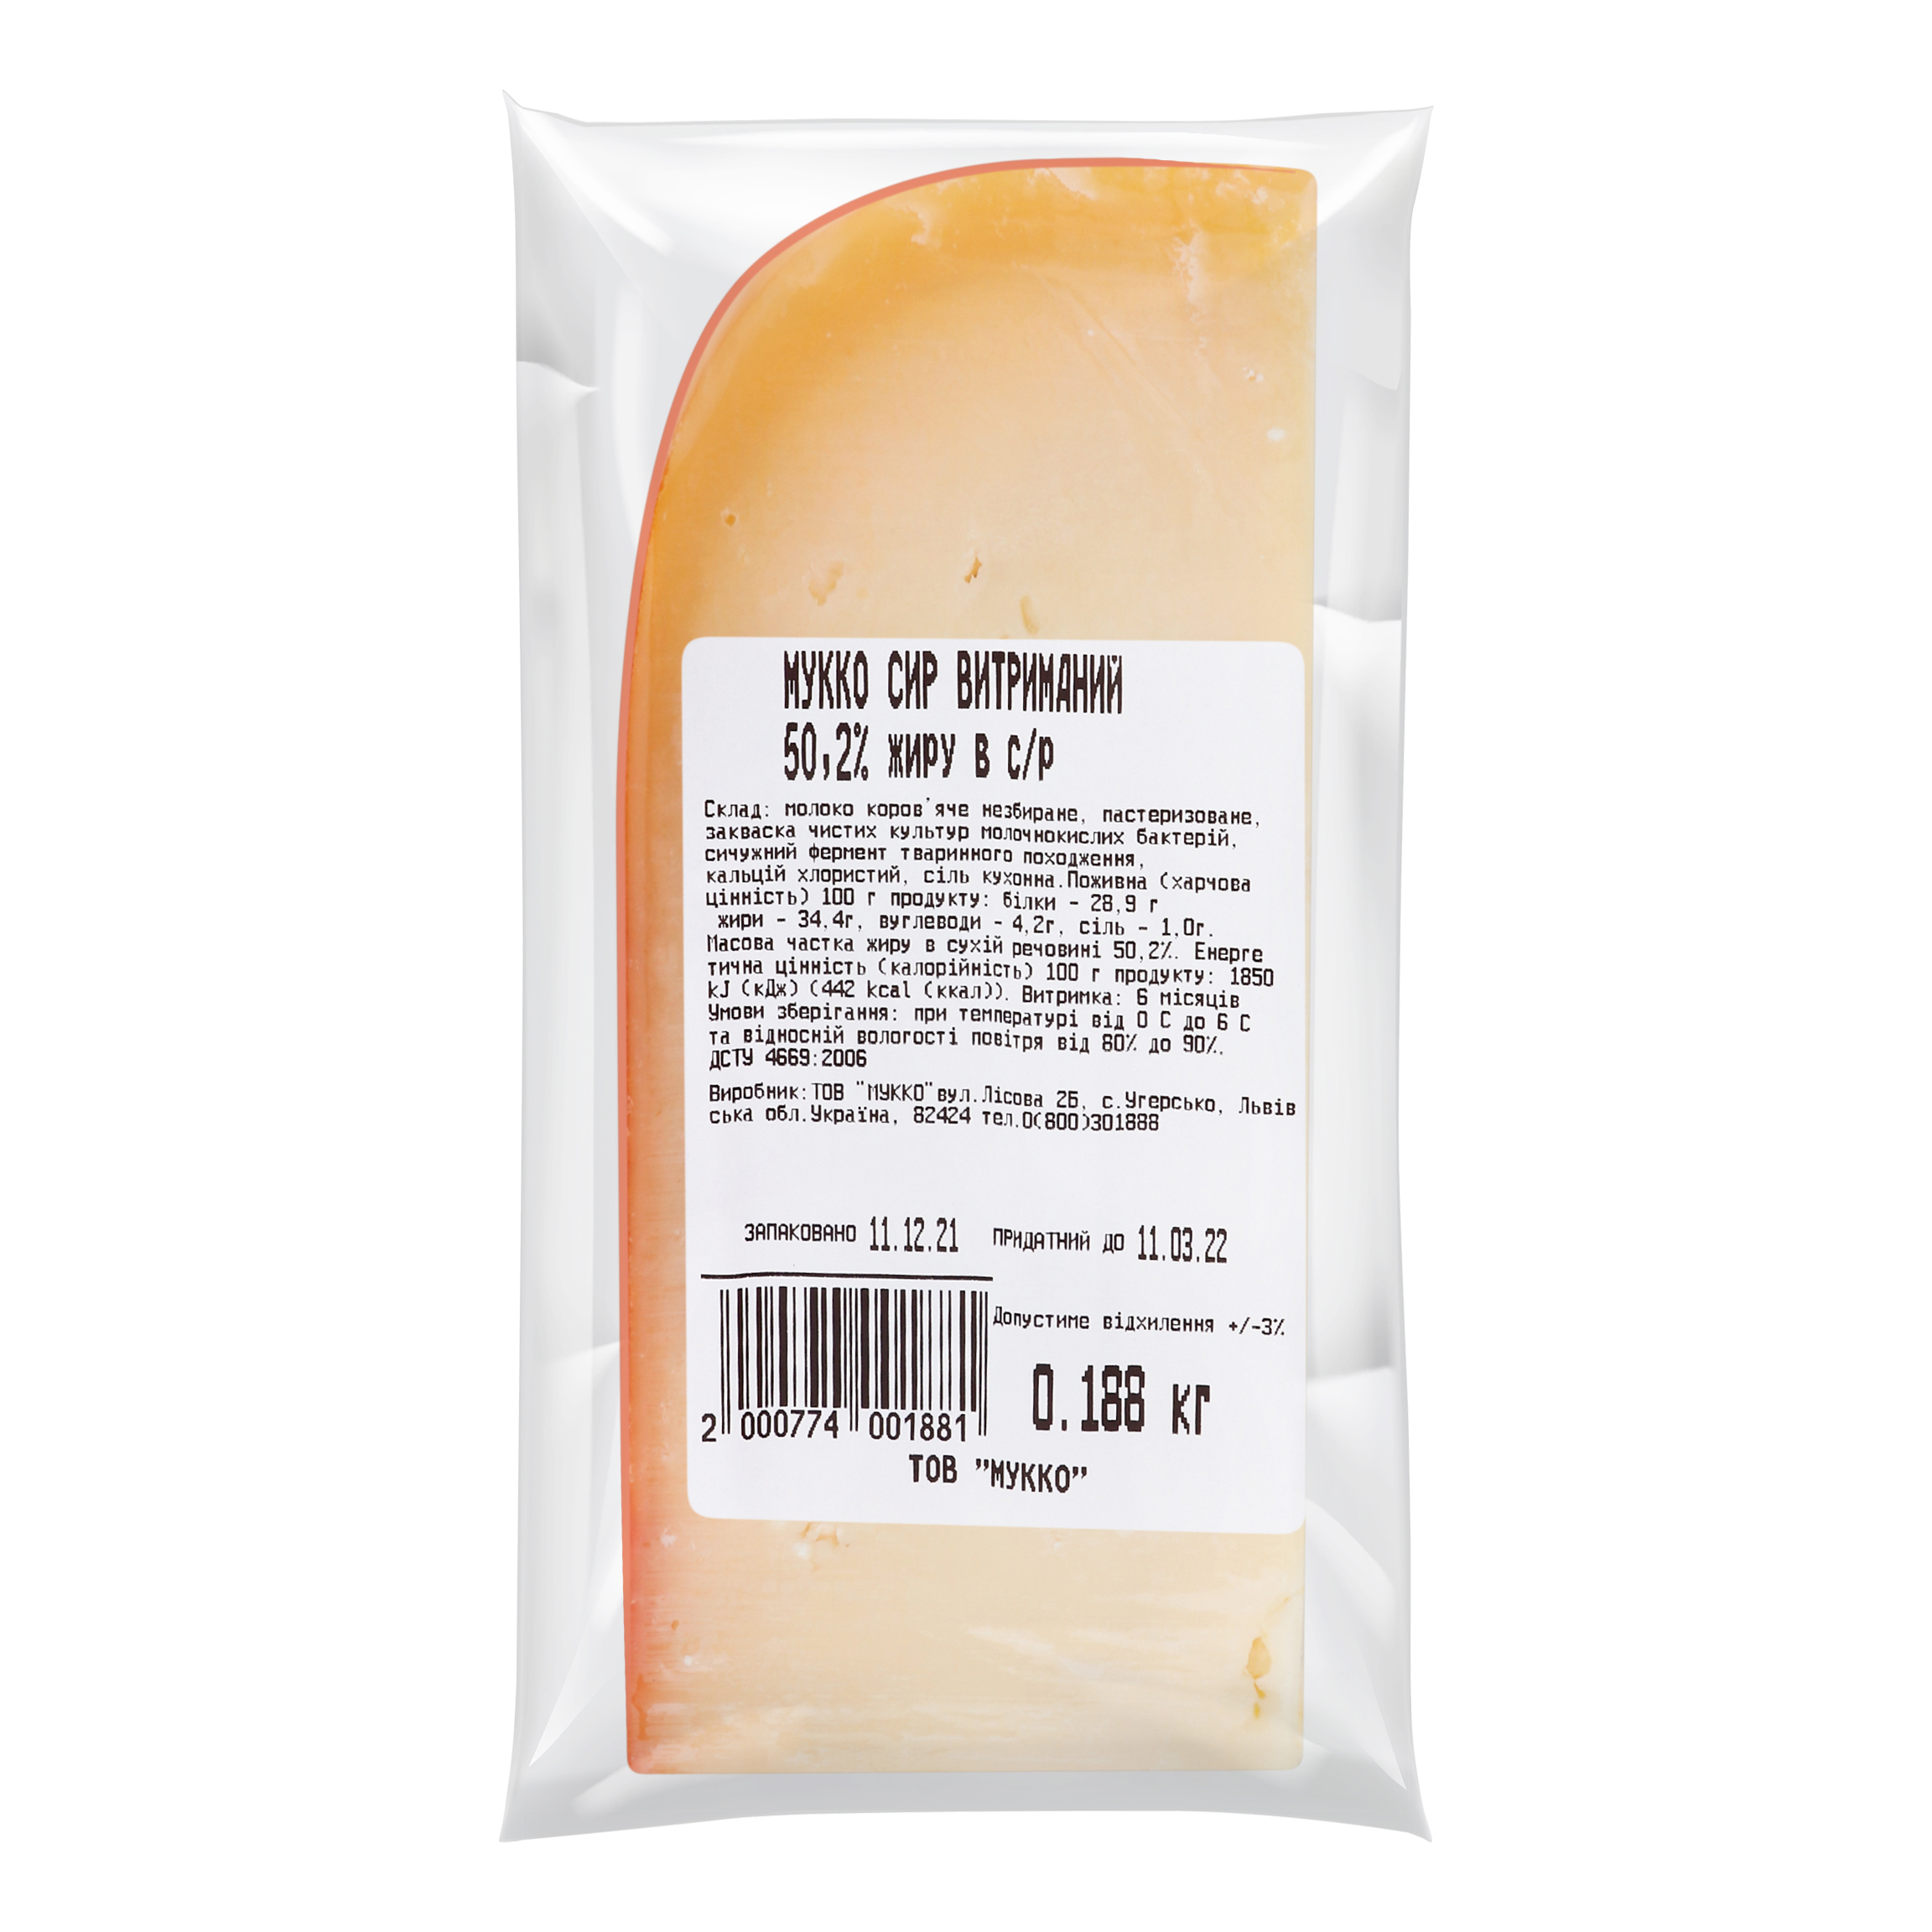 Сыр Мукко выдержан 6 месяцев 50,2% 2